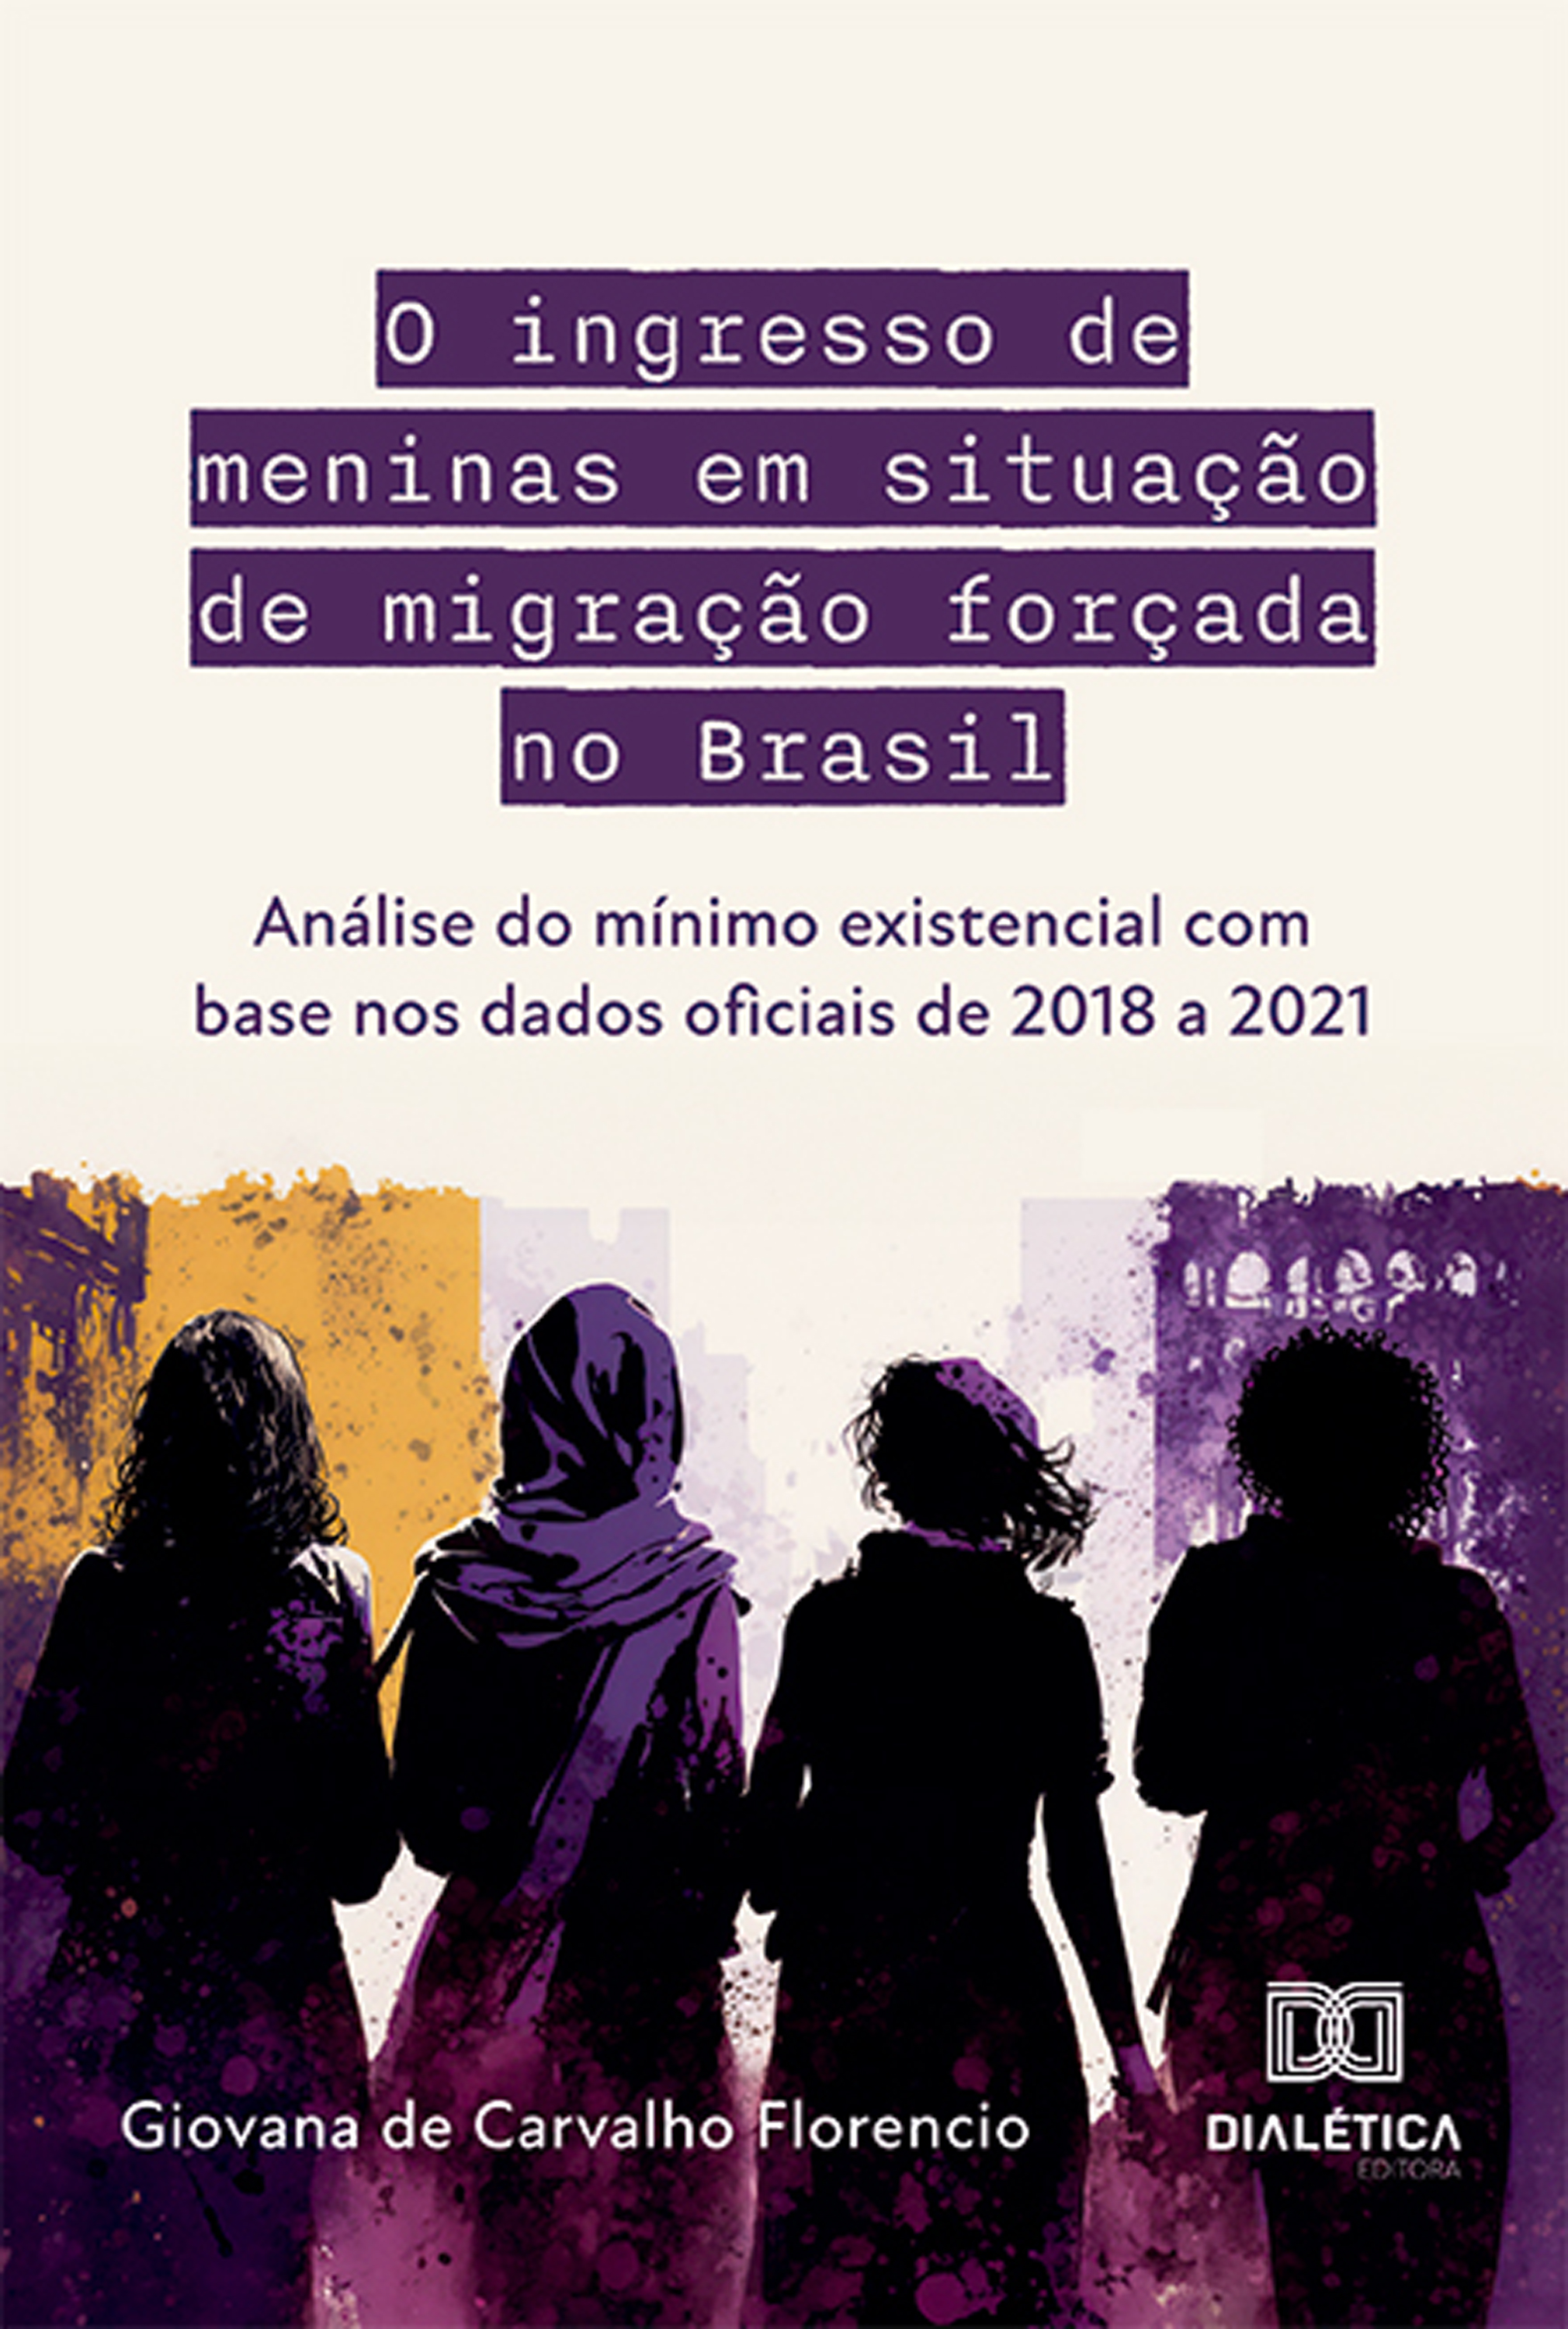 O ingresso de meninas em situação de migração forçada no Brasil